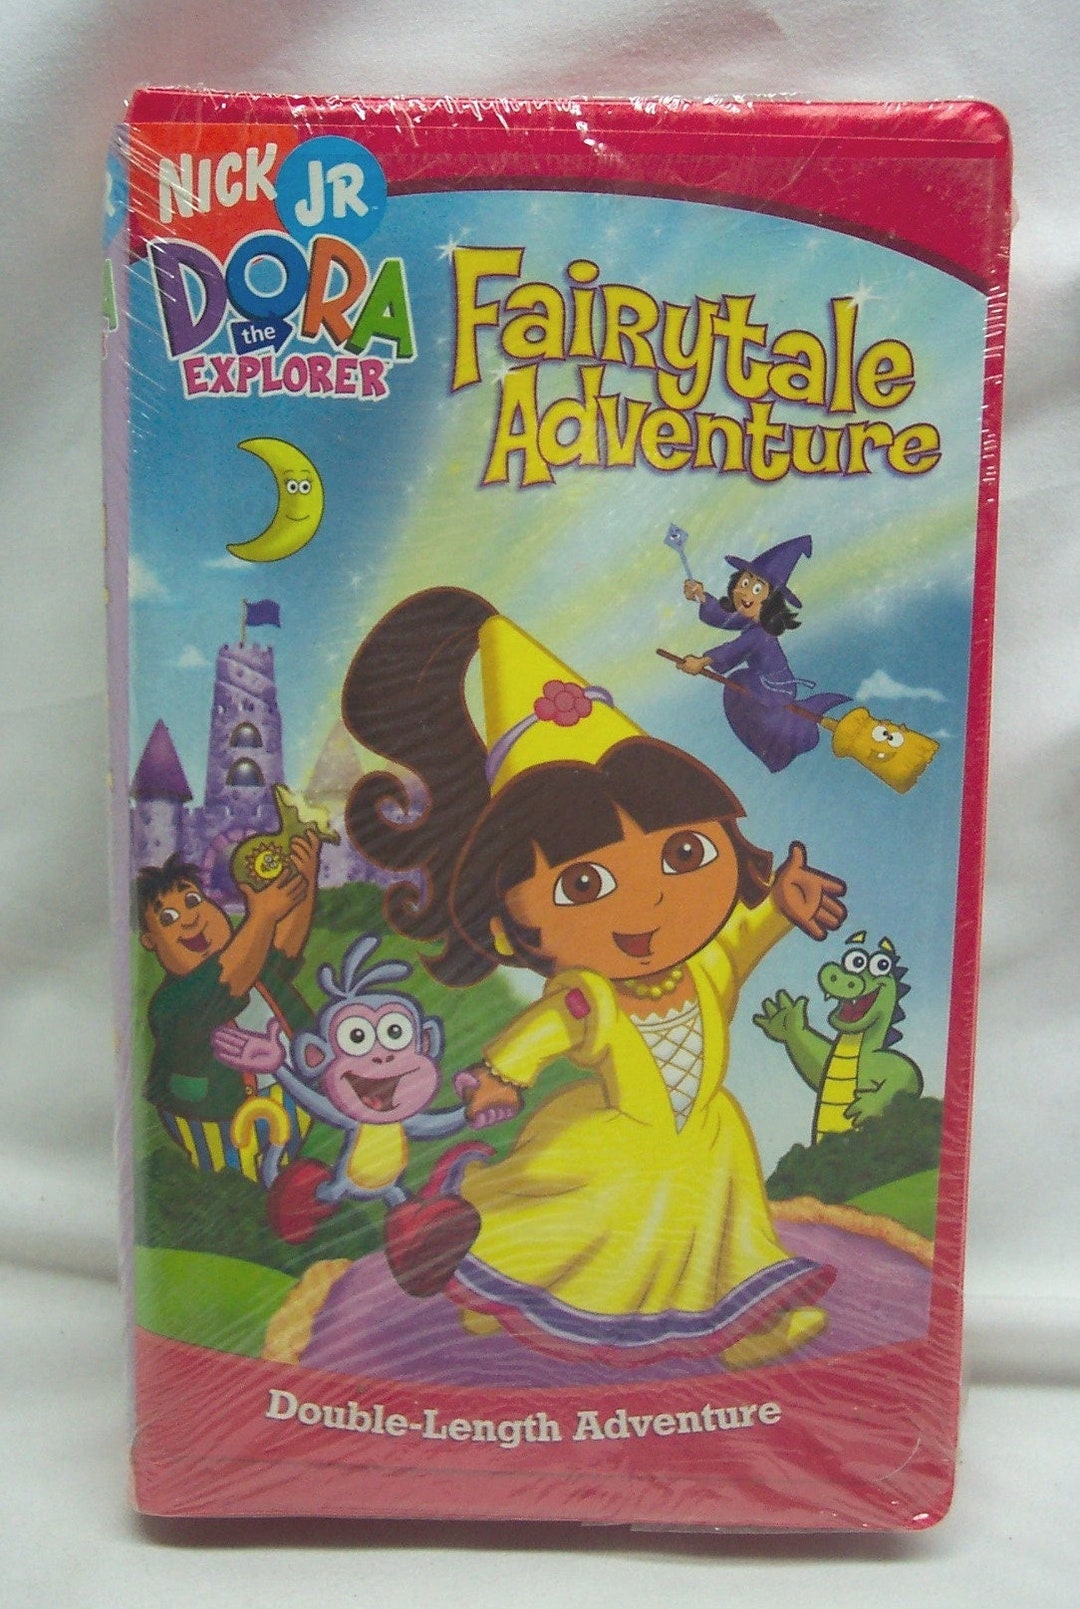 Vintage DORA THE EXPLORER: Fairytail Adventure Vhs Video Movie New in ...